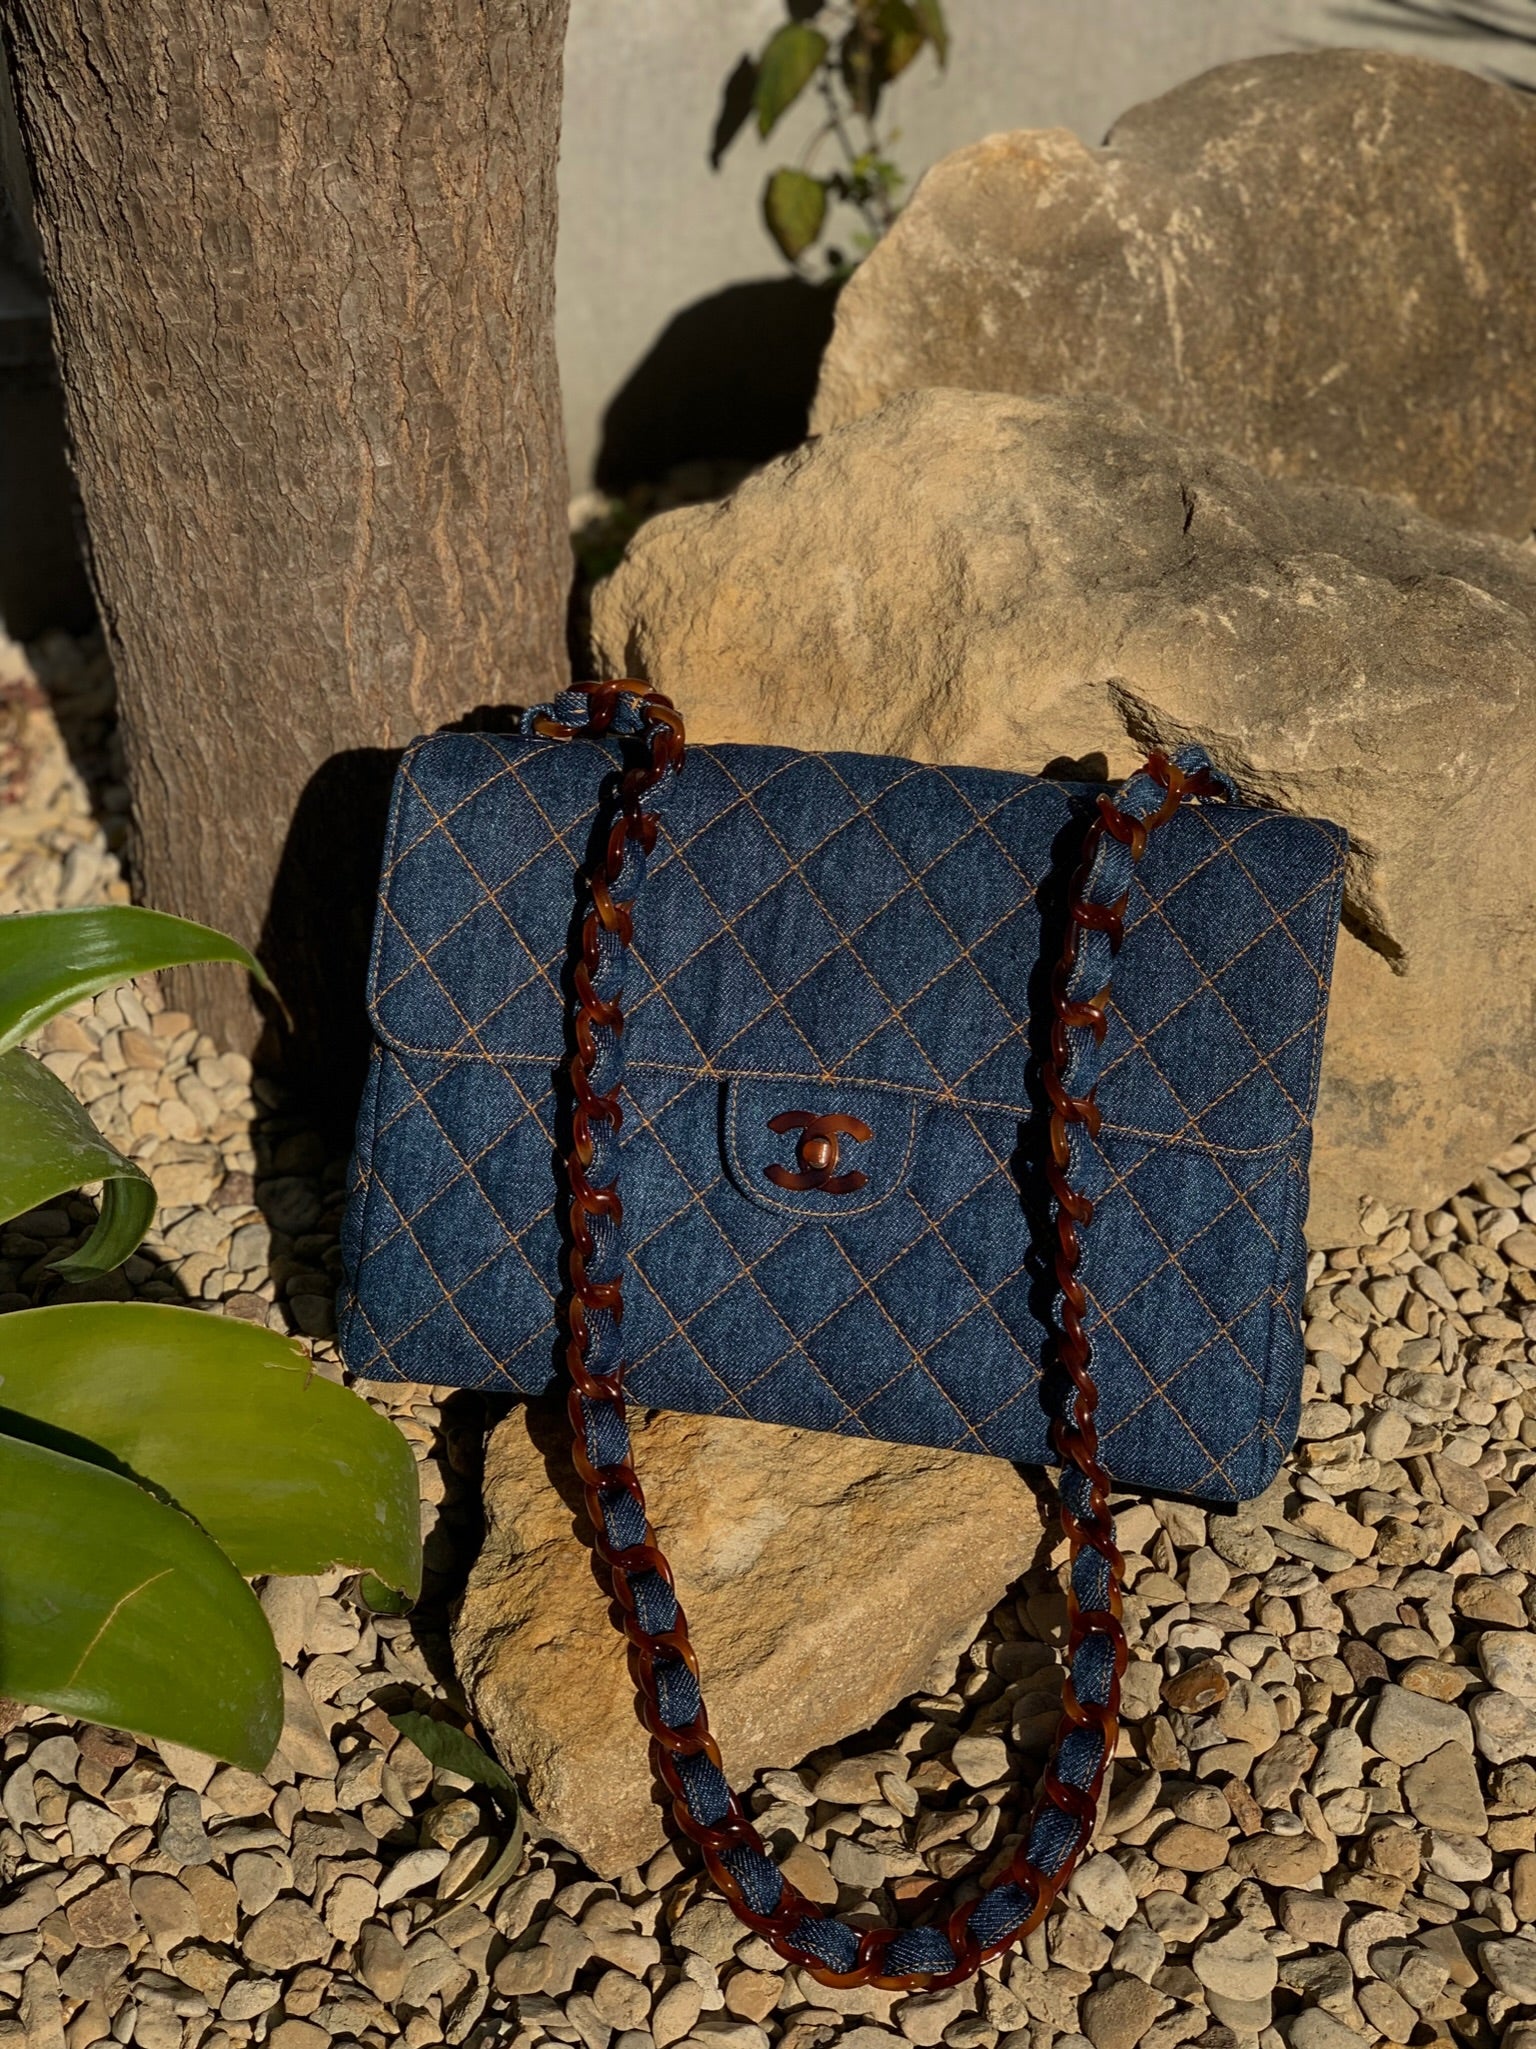 Sold at Auction: Vintage Chanel Matelasse Leather Mini Flap Shoulder Bag